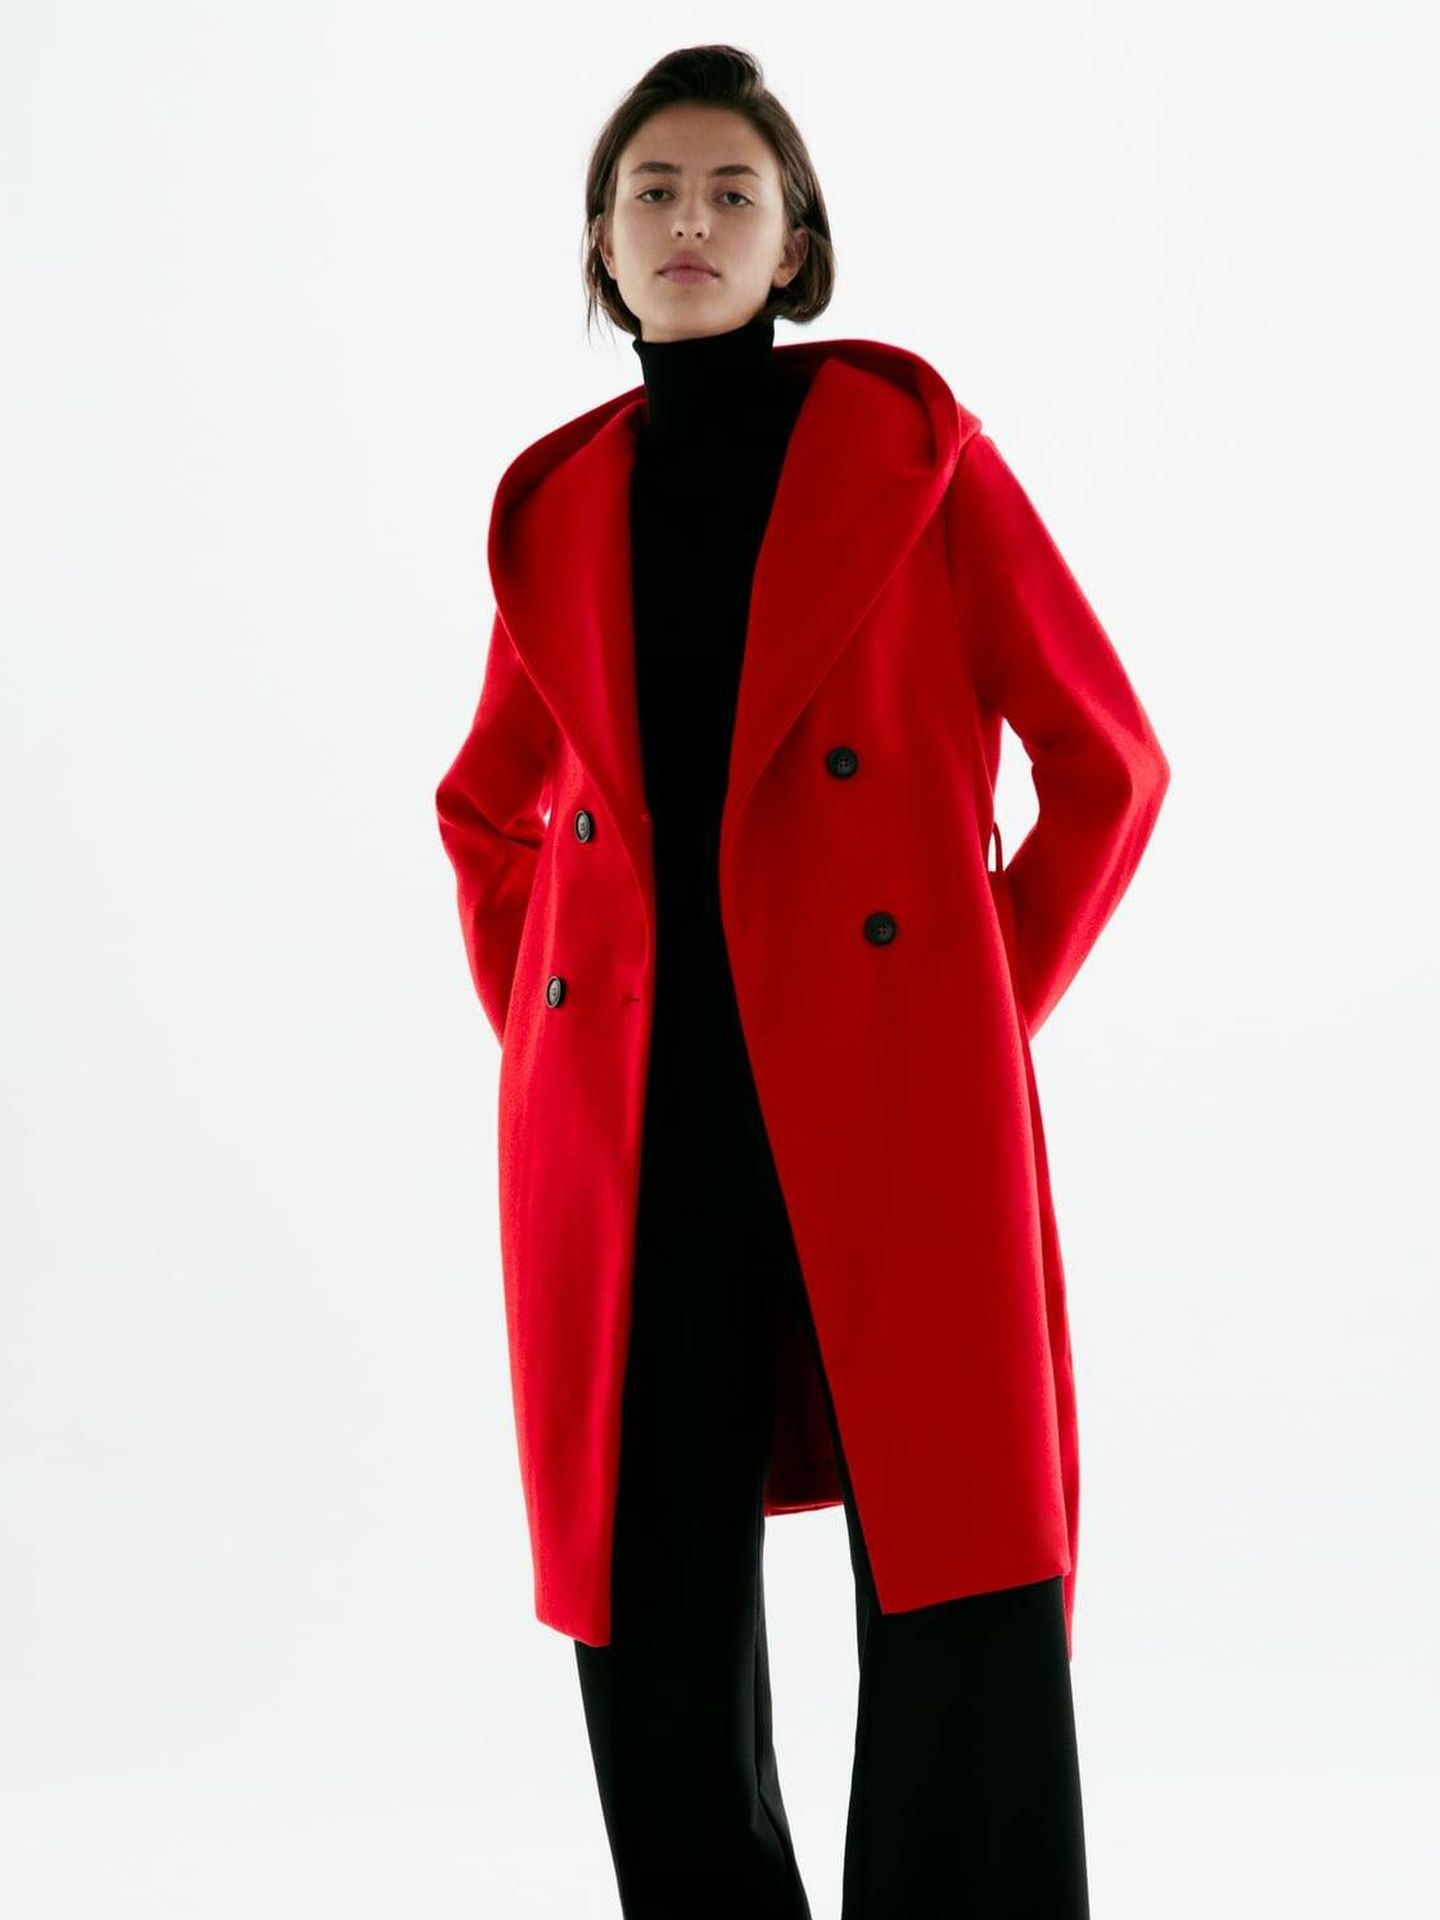 Abrigo rojo. (Zara/Cortesía)